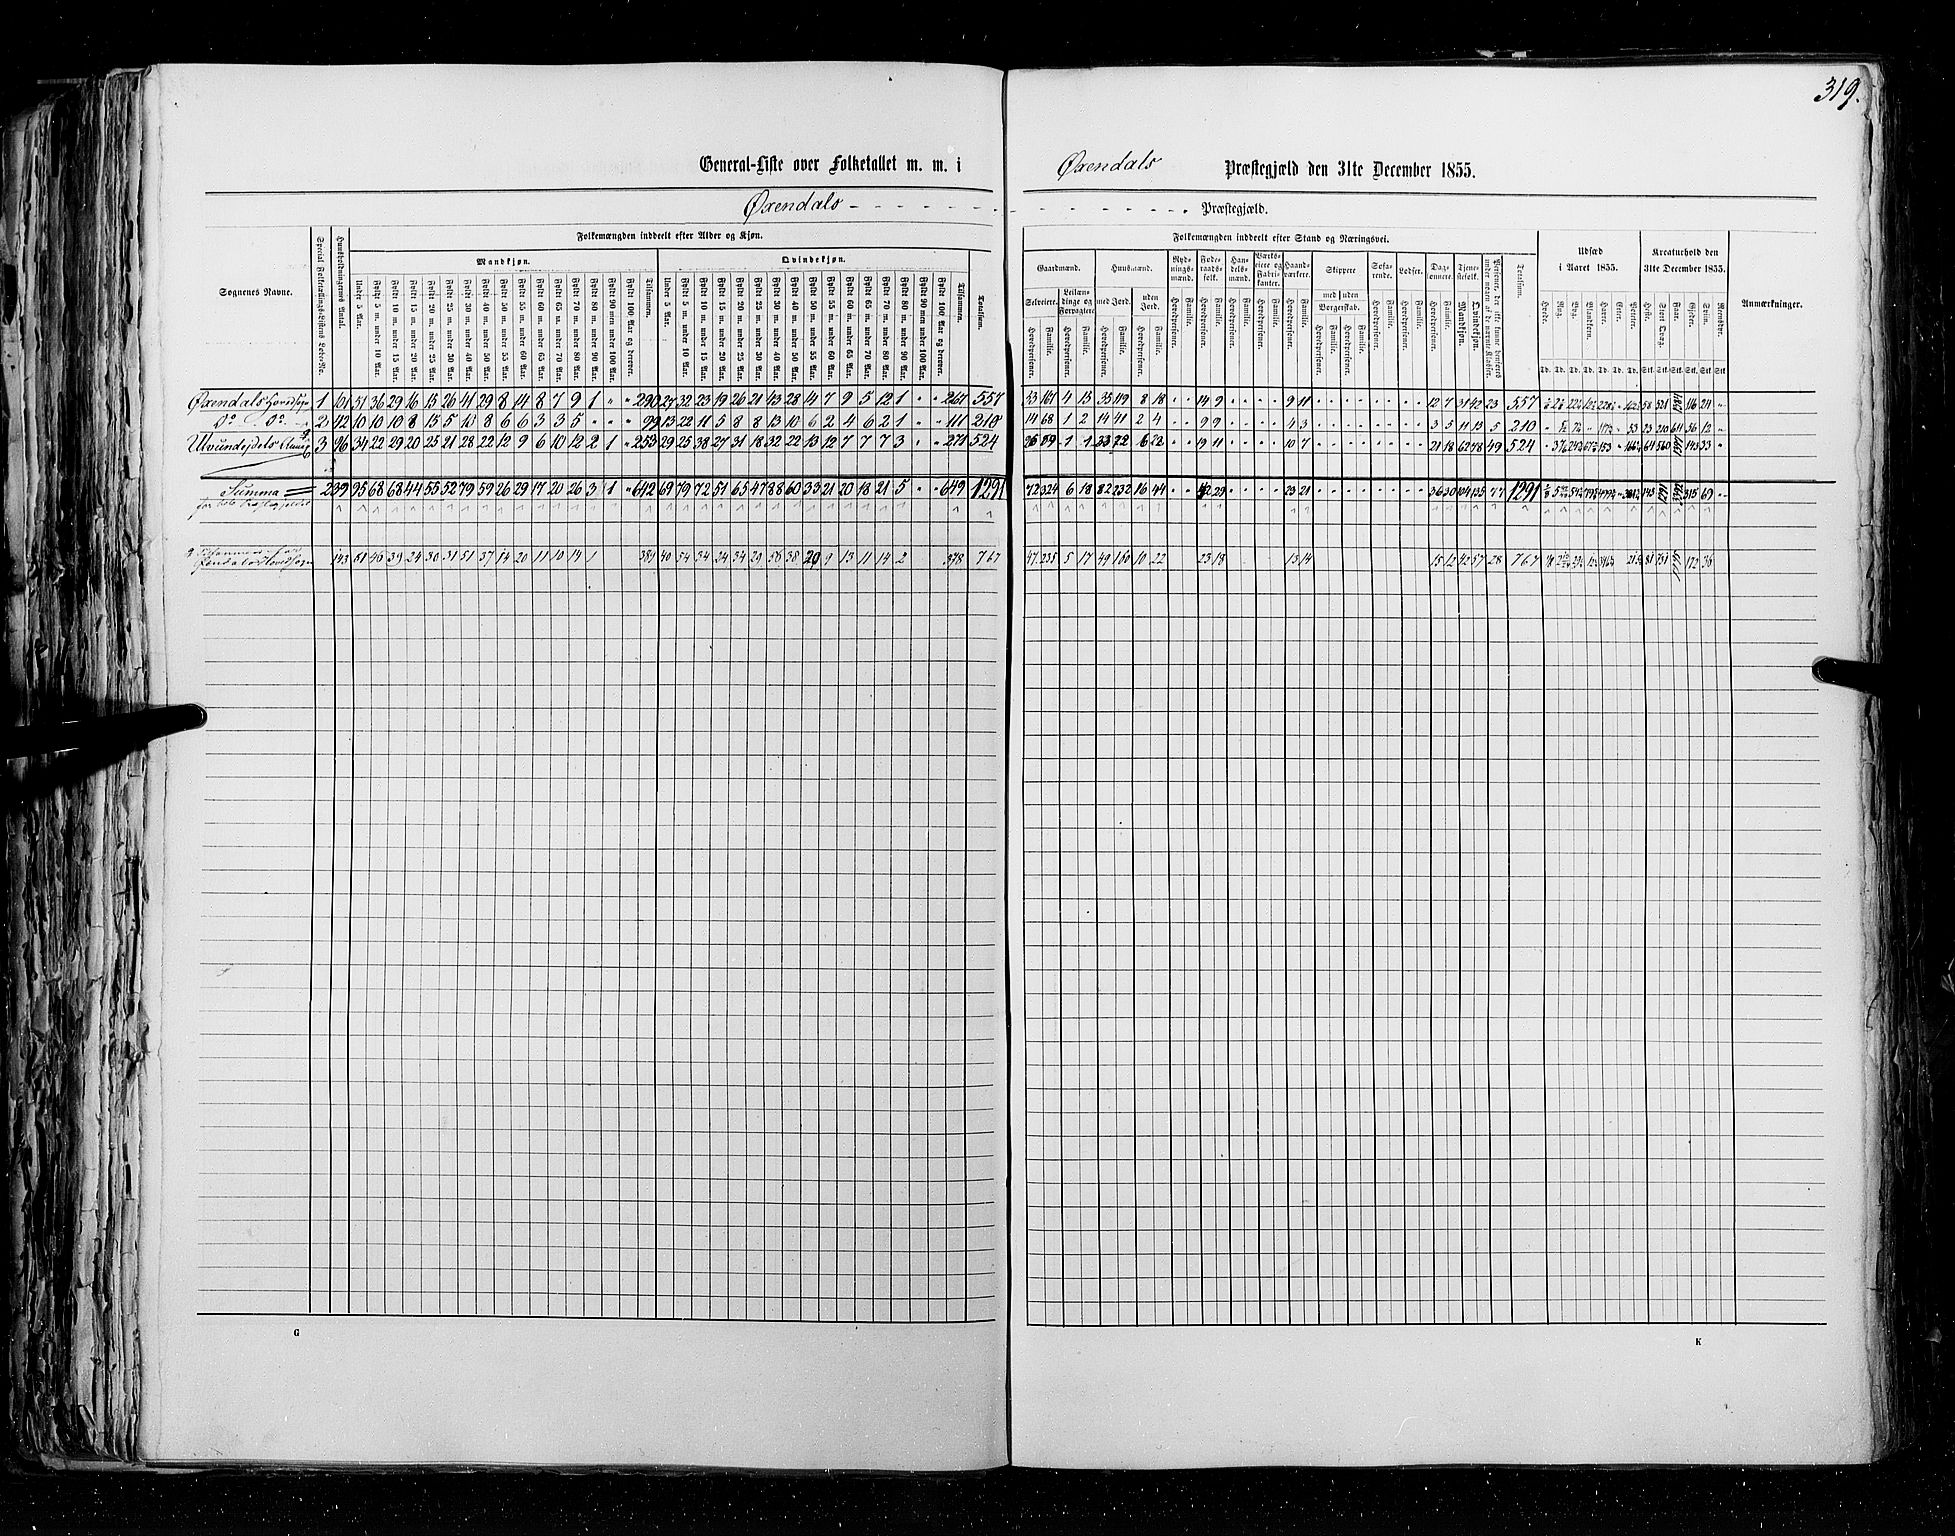 RA, Census 1855, vol. 5: Nordre Bergenhus amt, Romsdal amt og Søndre Trondhjem amt, 1855, p. 319